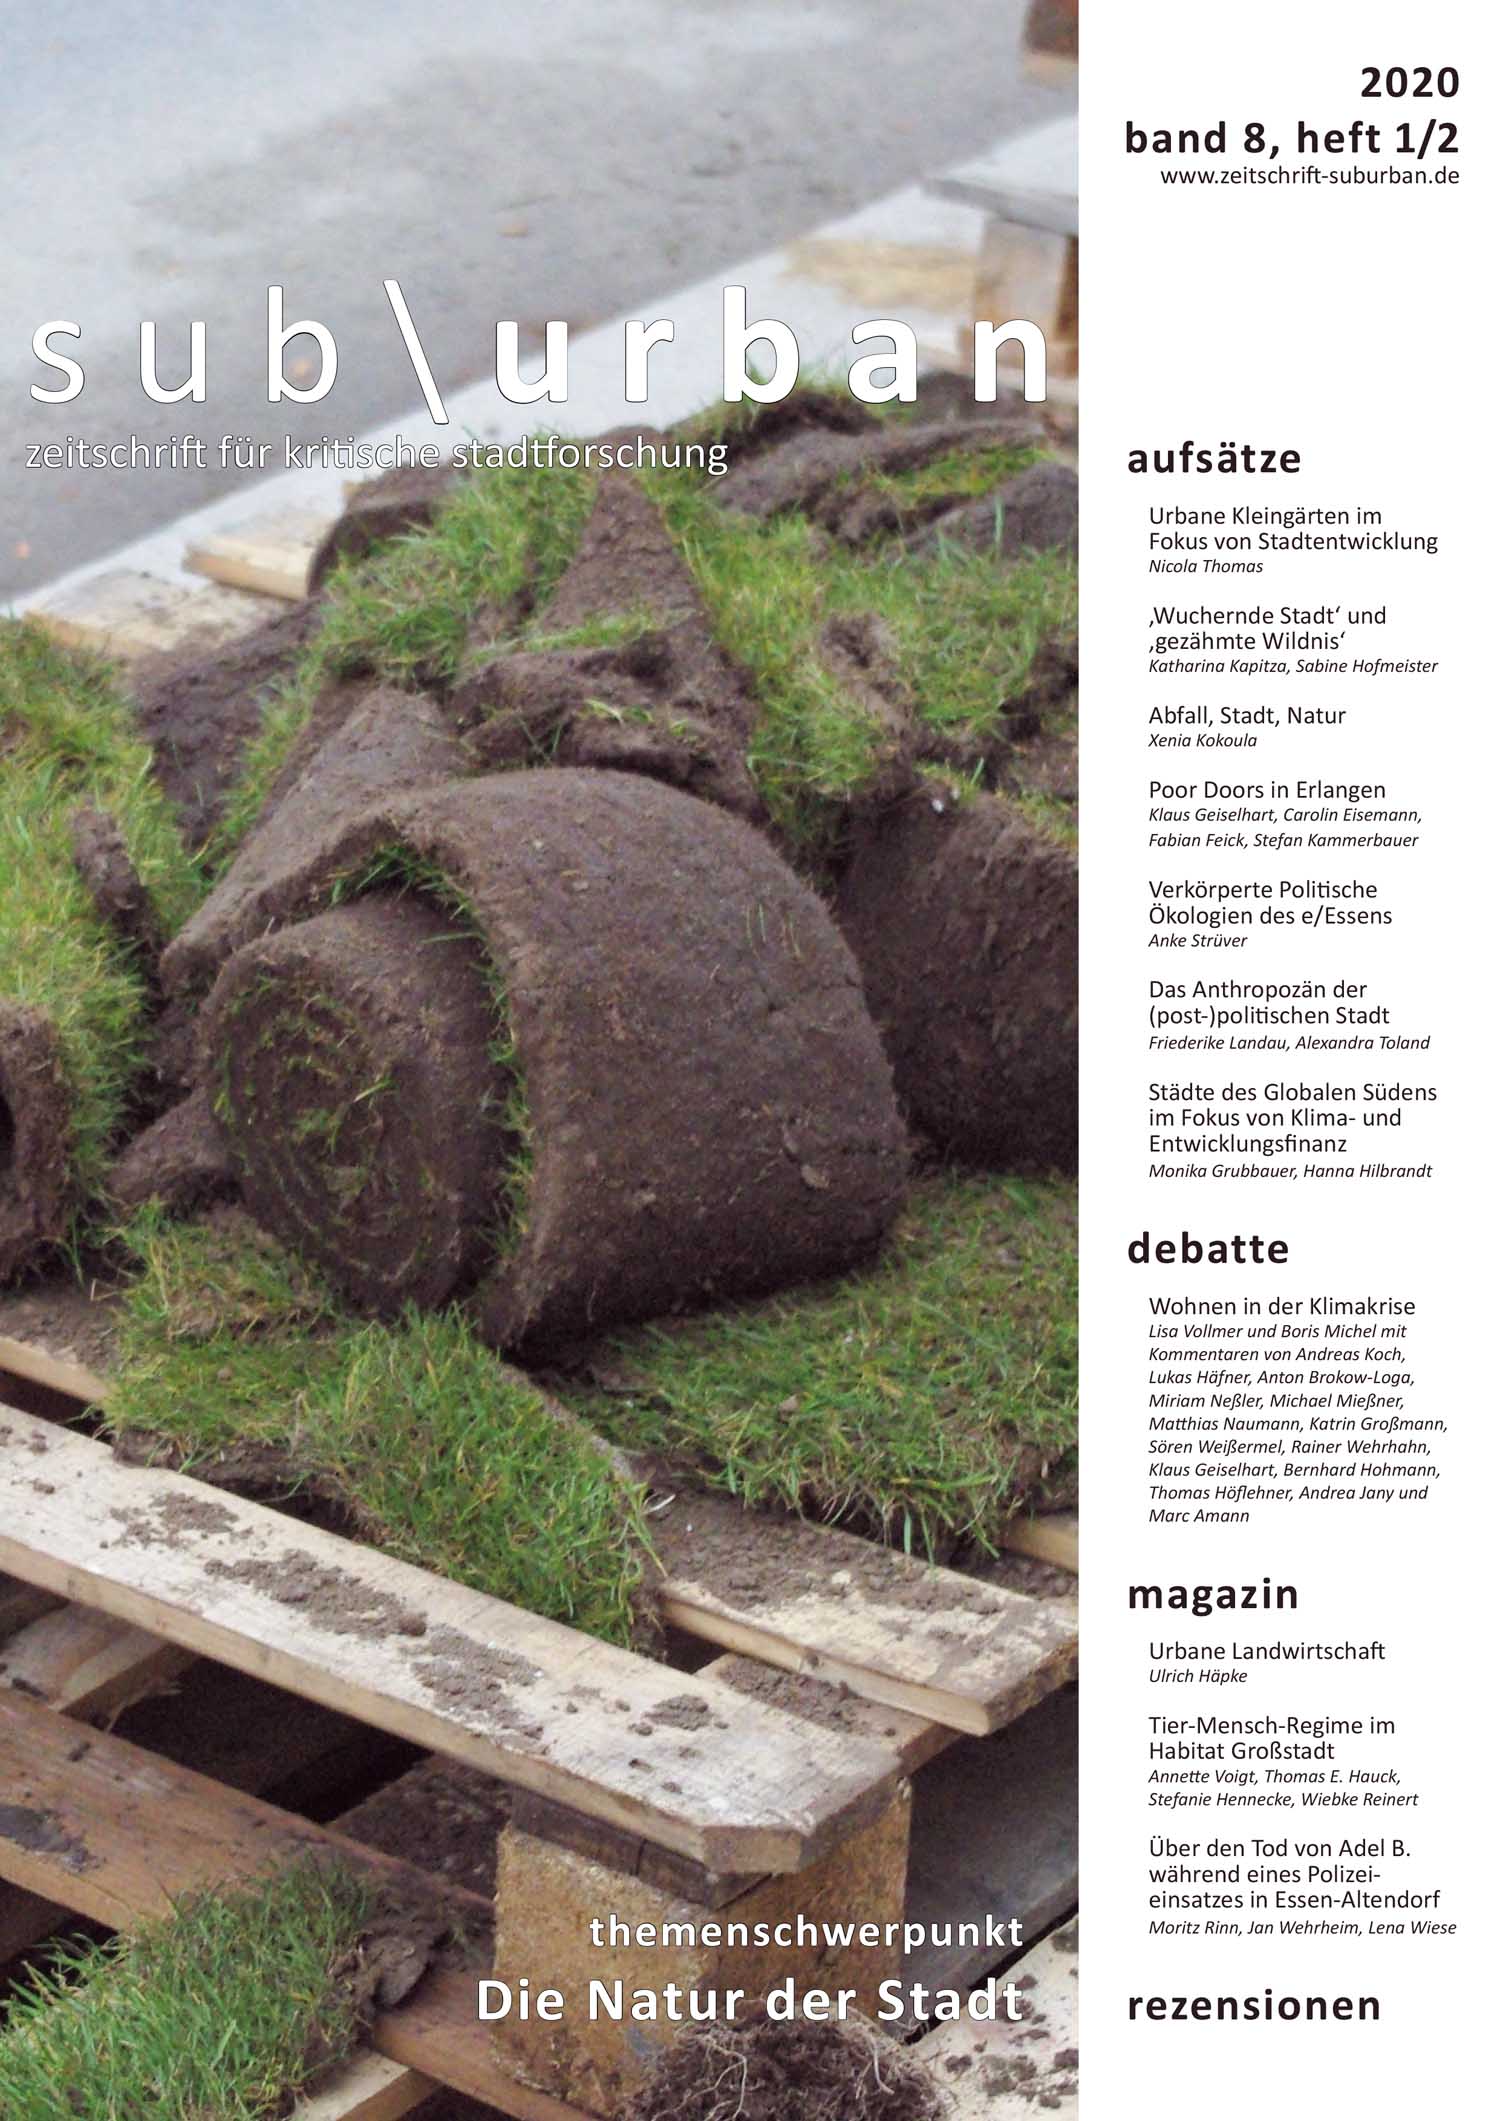 Heftcover Titelbild:  (Bd. 8 Nr. 1/2 (2020): Die Natur der Stadt. Urbane politische Ökologien)